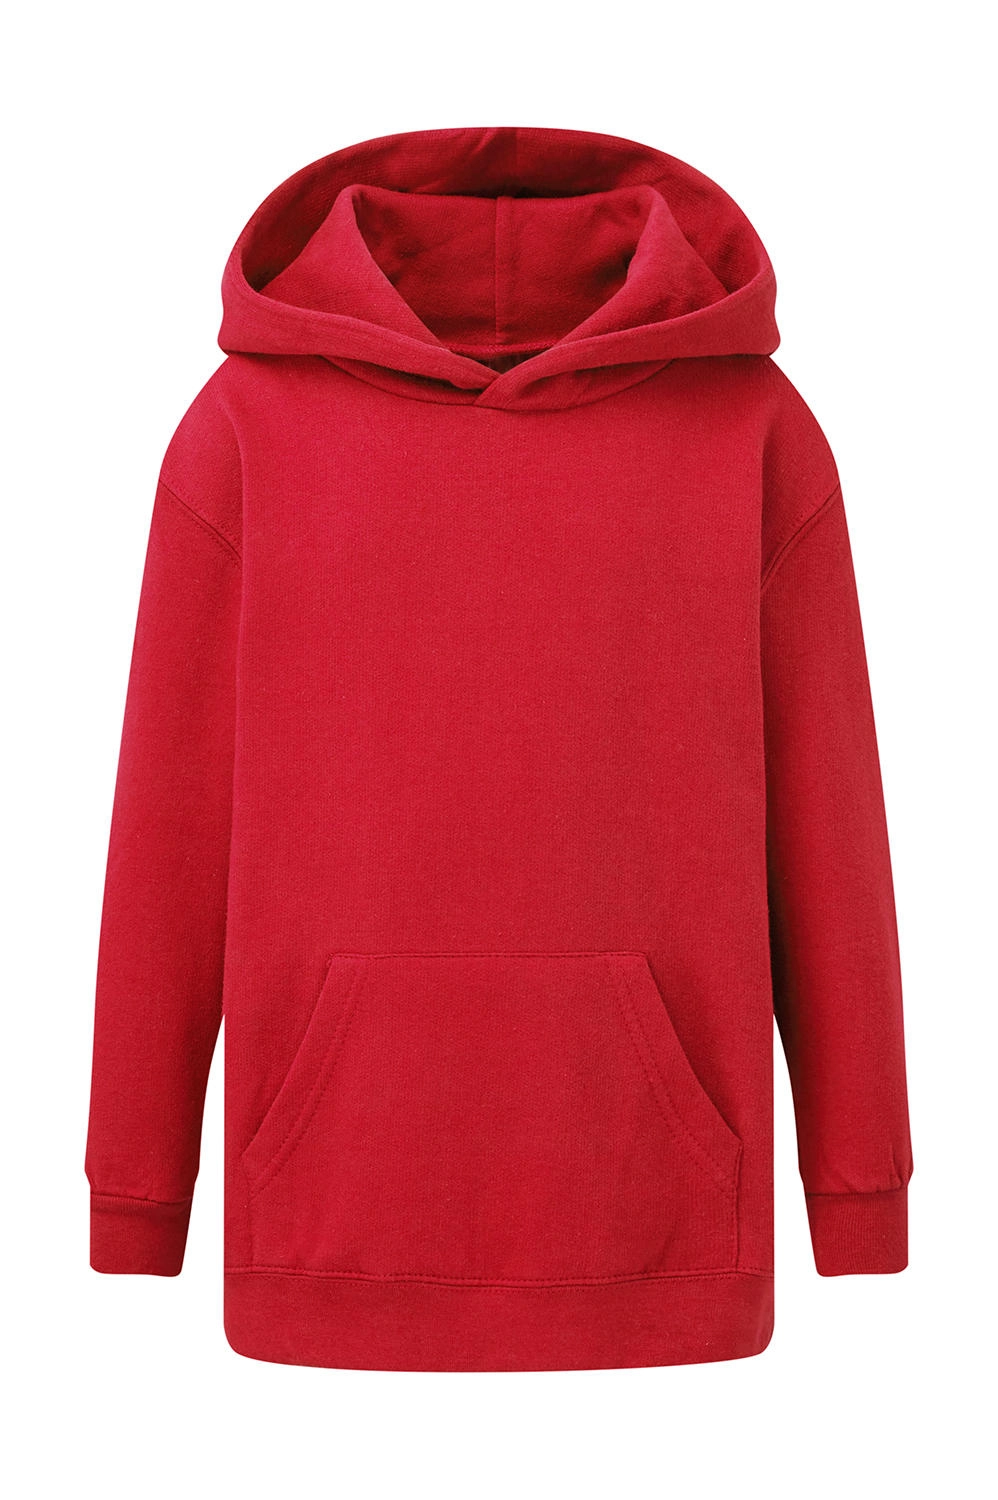 Hooded Sweatshirt Kids zum Besticken und Bedrucken in der Farbe Red mit Ihren Logo, Schriftzug oder Motiv.